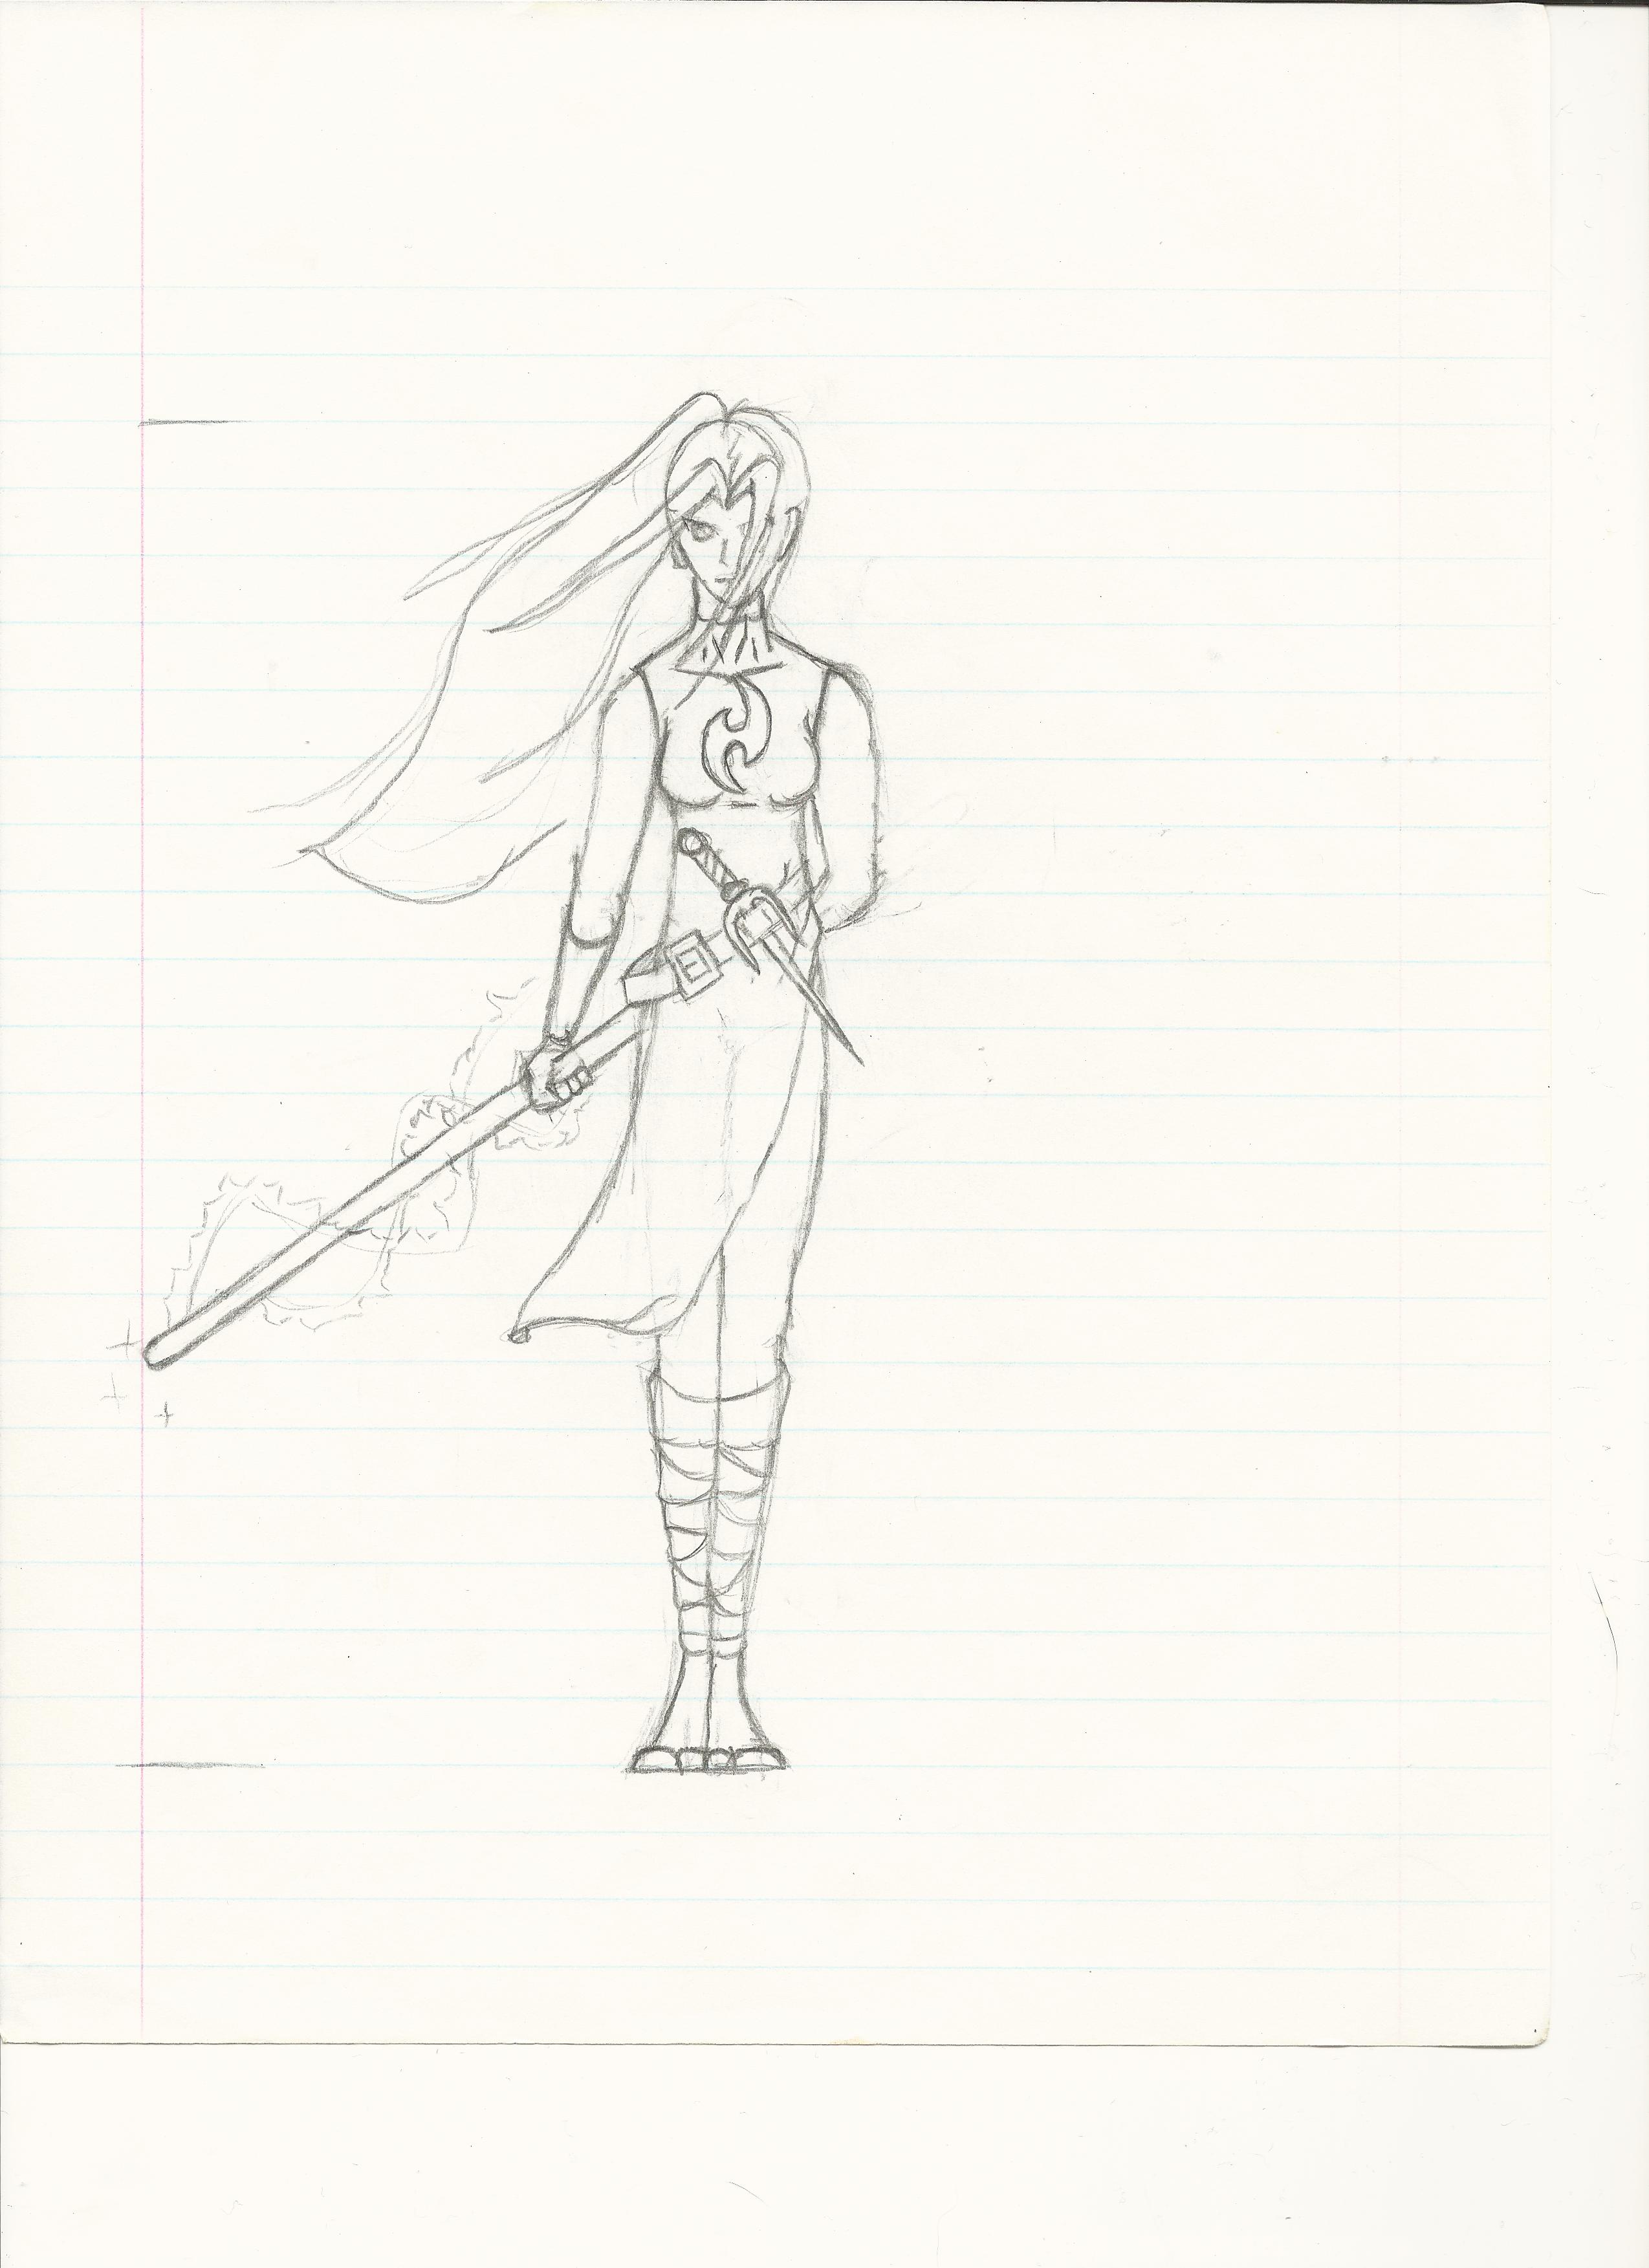 Female Skraith character.